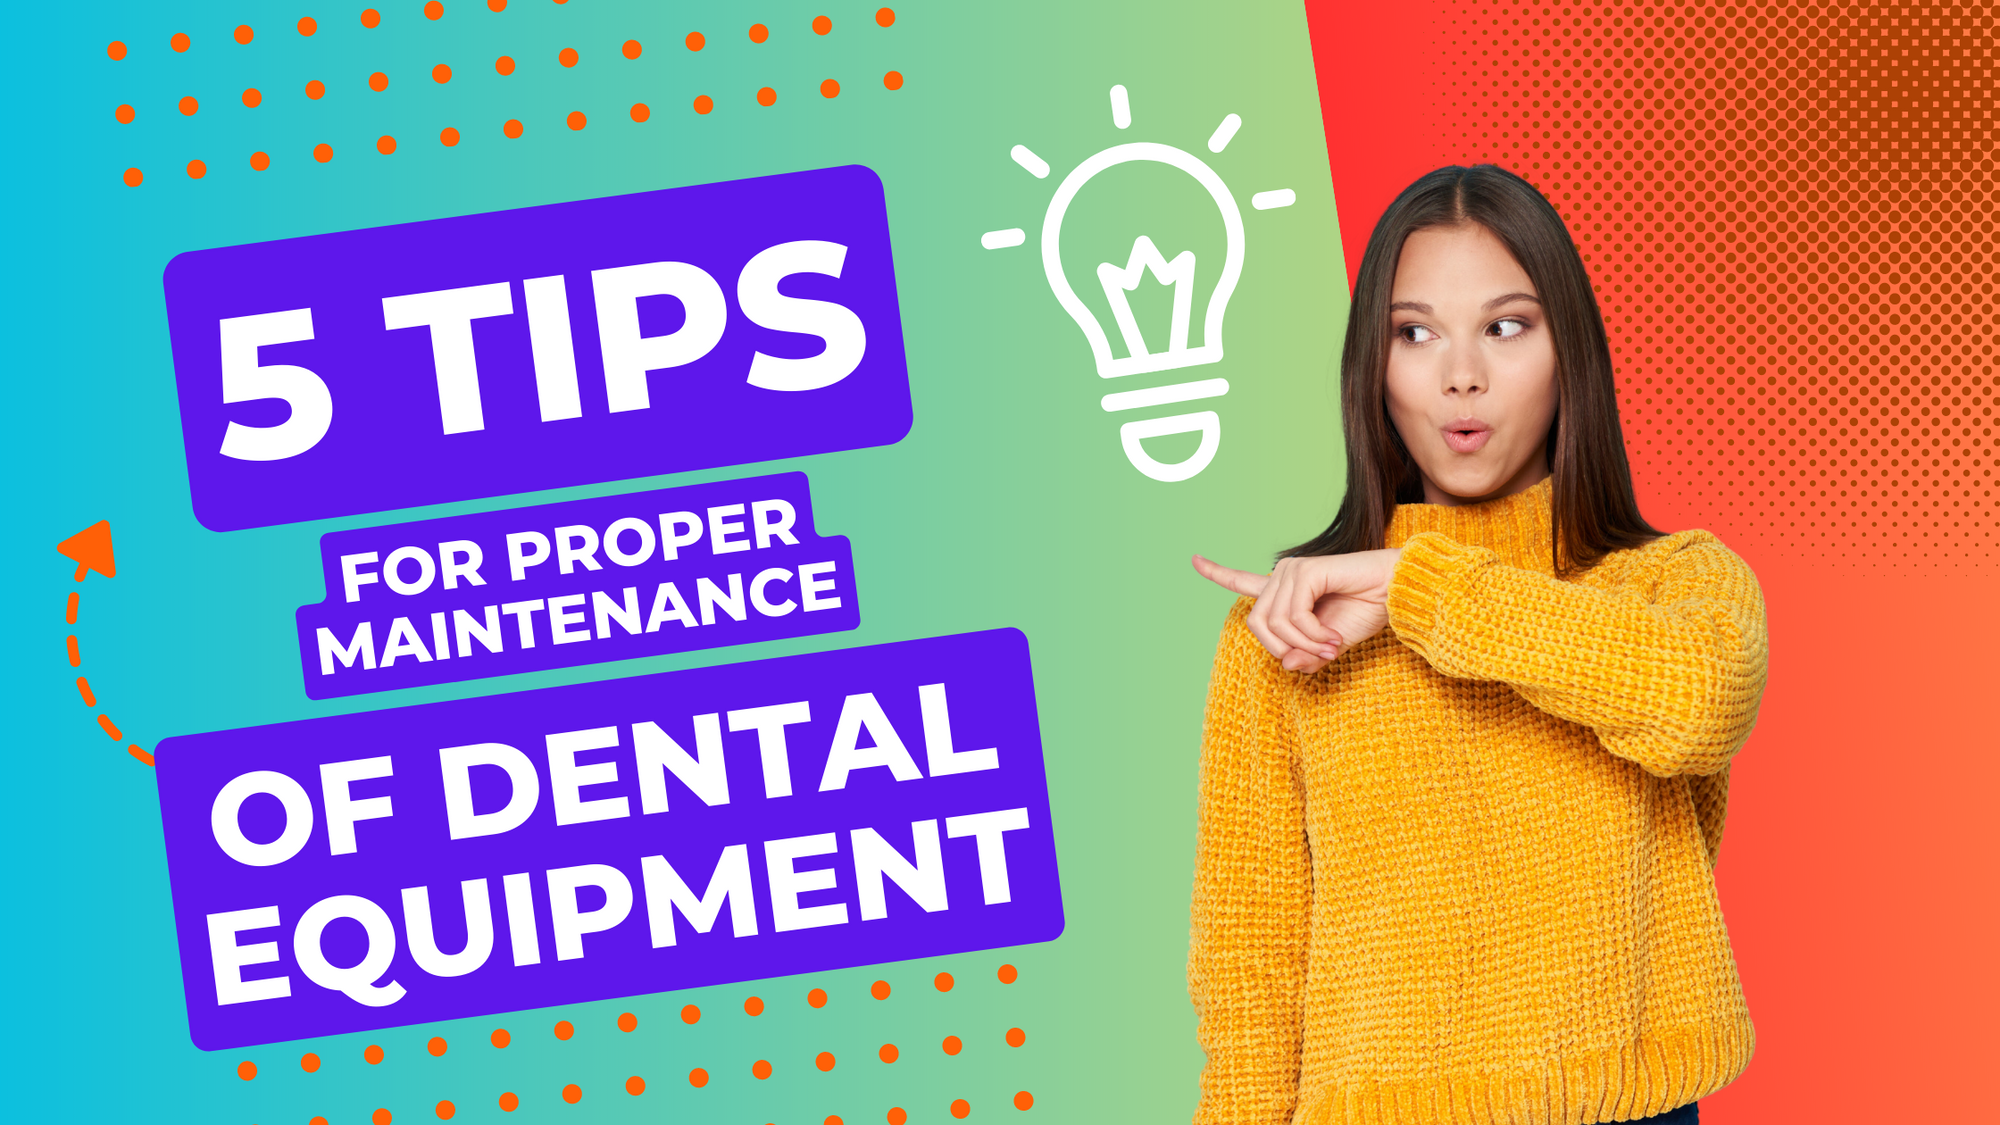 5 Tips for Proper Maintenance of Dental Equipment